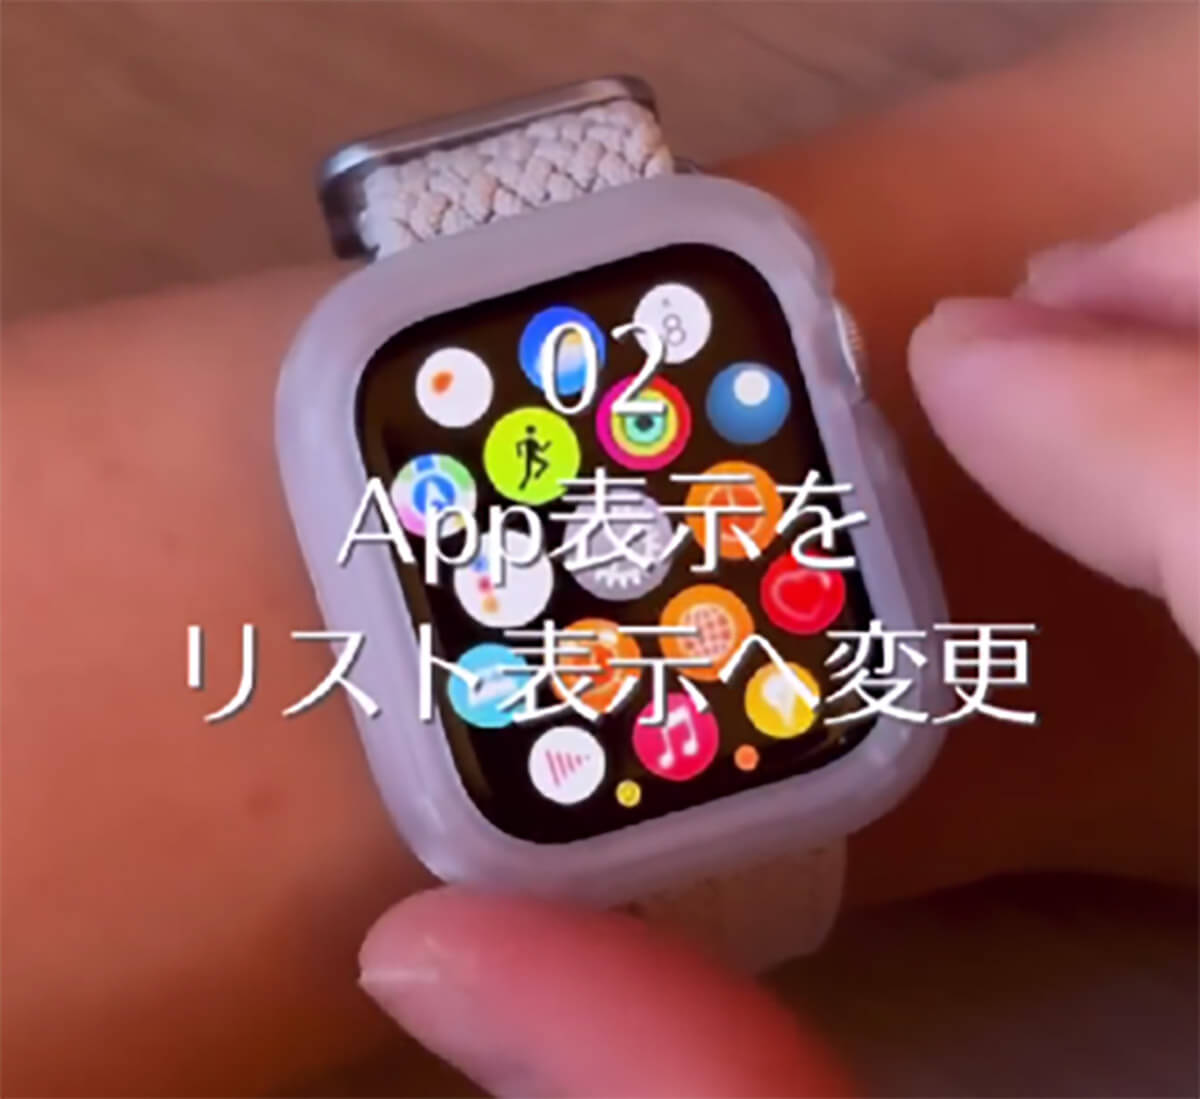 Apple Watchを購入したら、最初にやるべき設定2